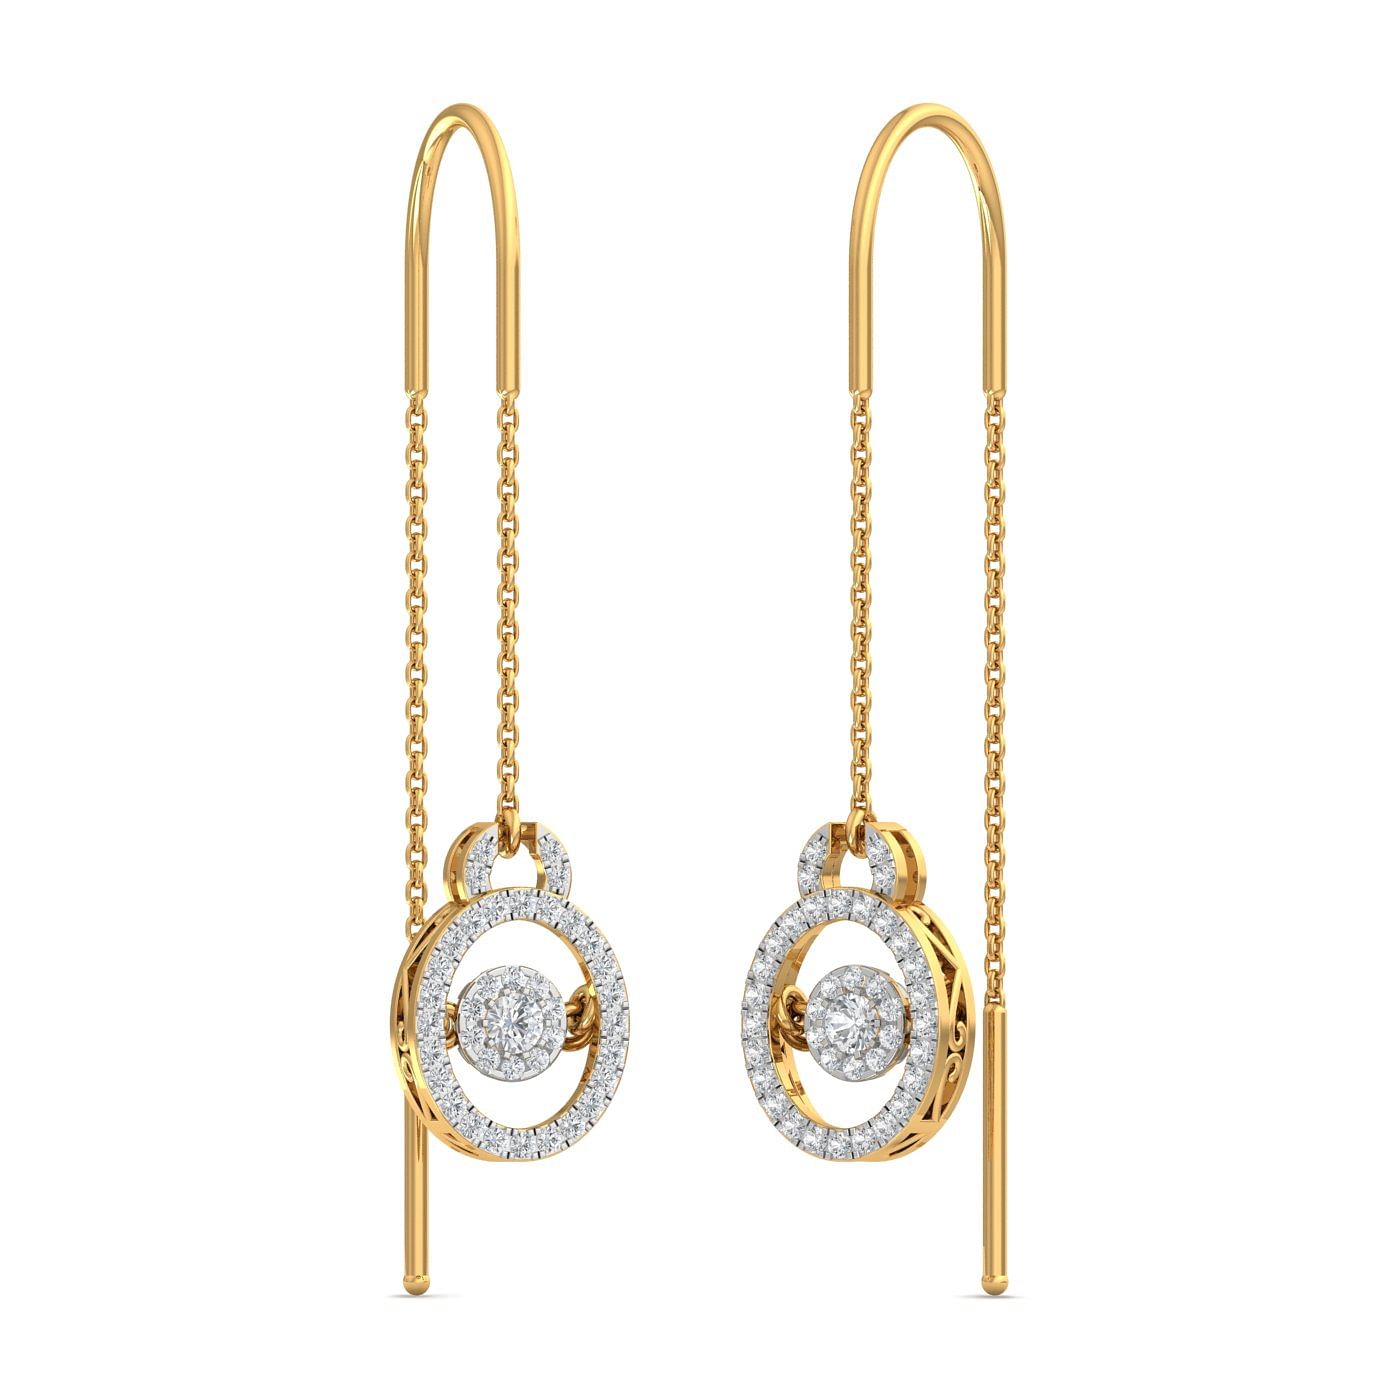 Buy Diamond Earrings Set in 14KT Rose Gold Online  ORRA